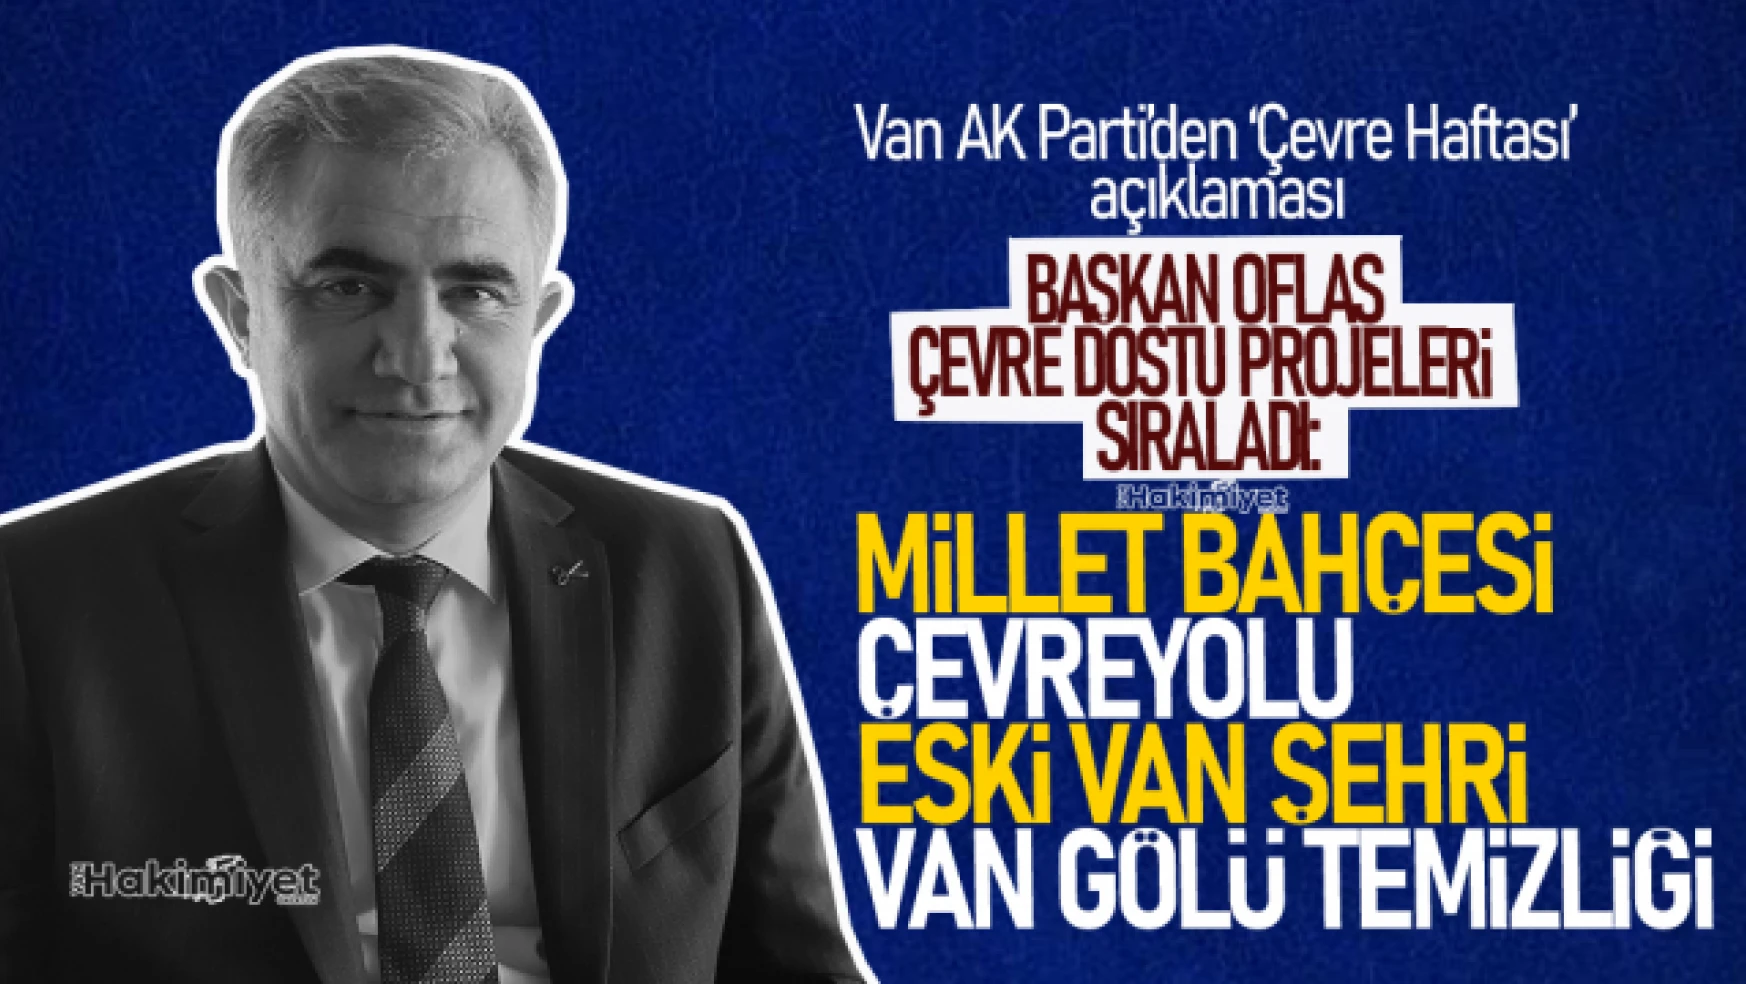 Van AK Parti'den '1-7 Haziran Çevre Haftası' açıklaması